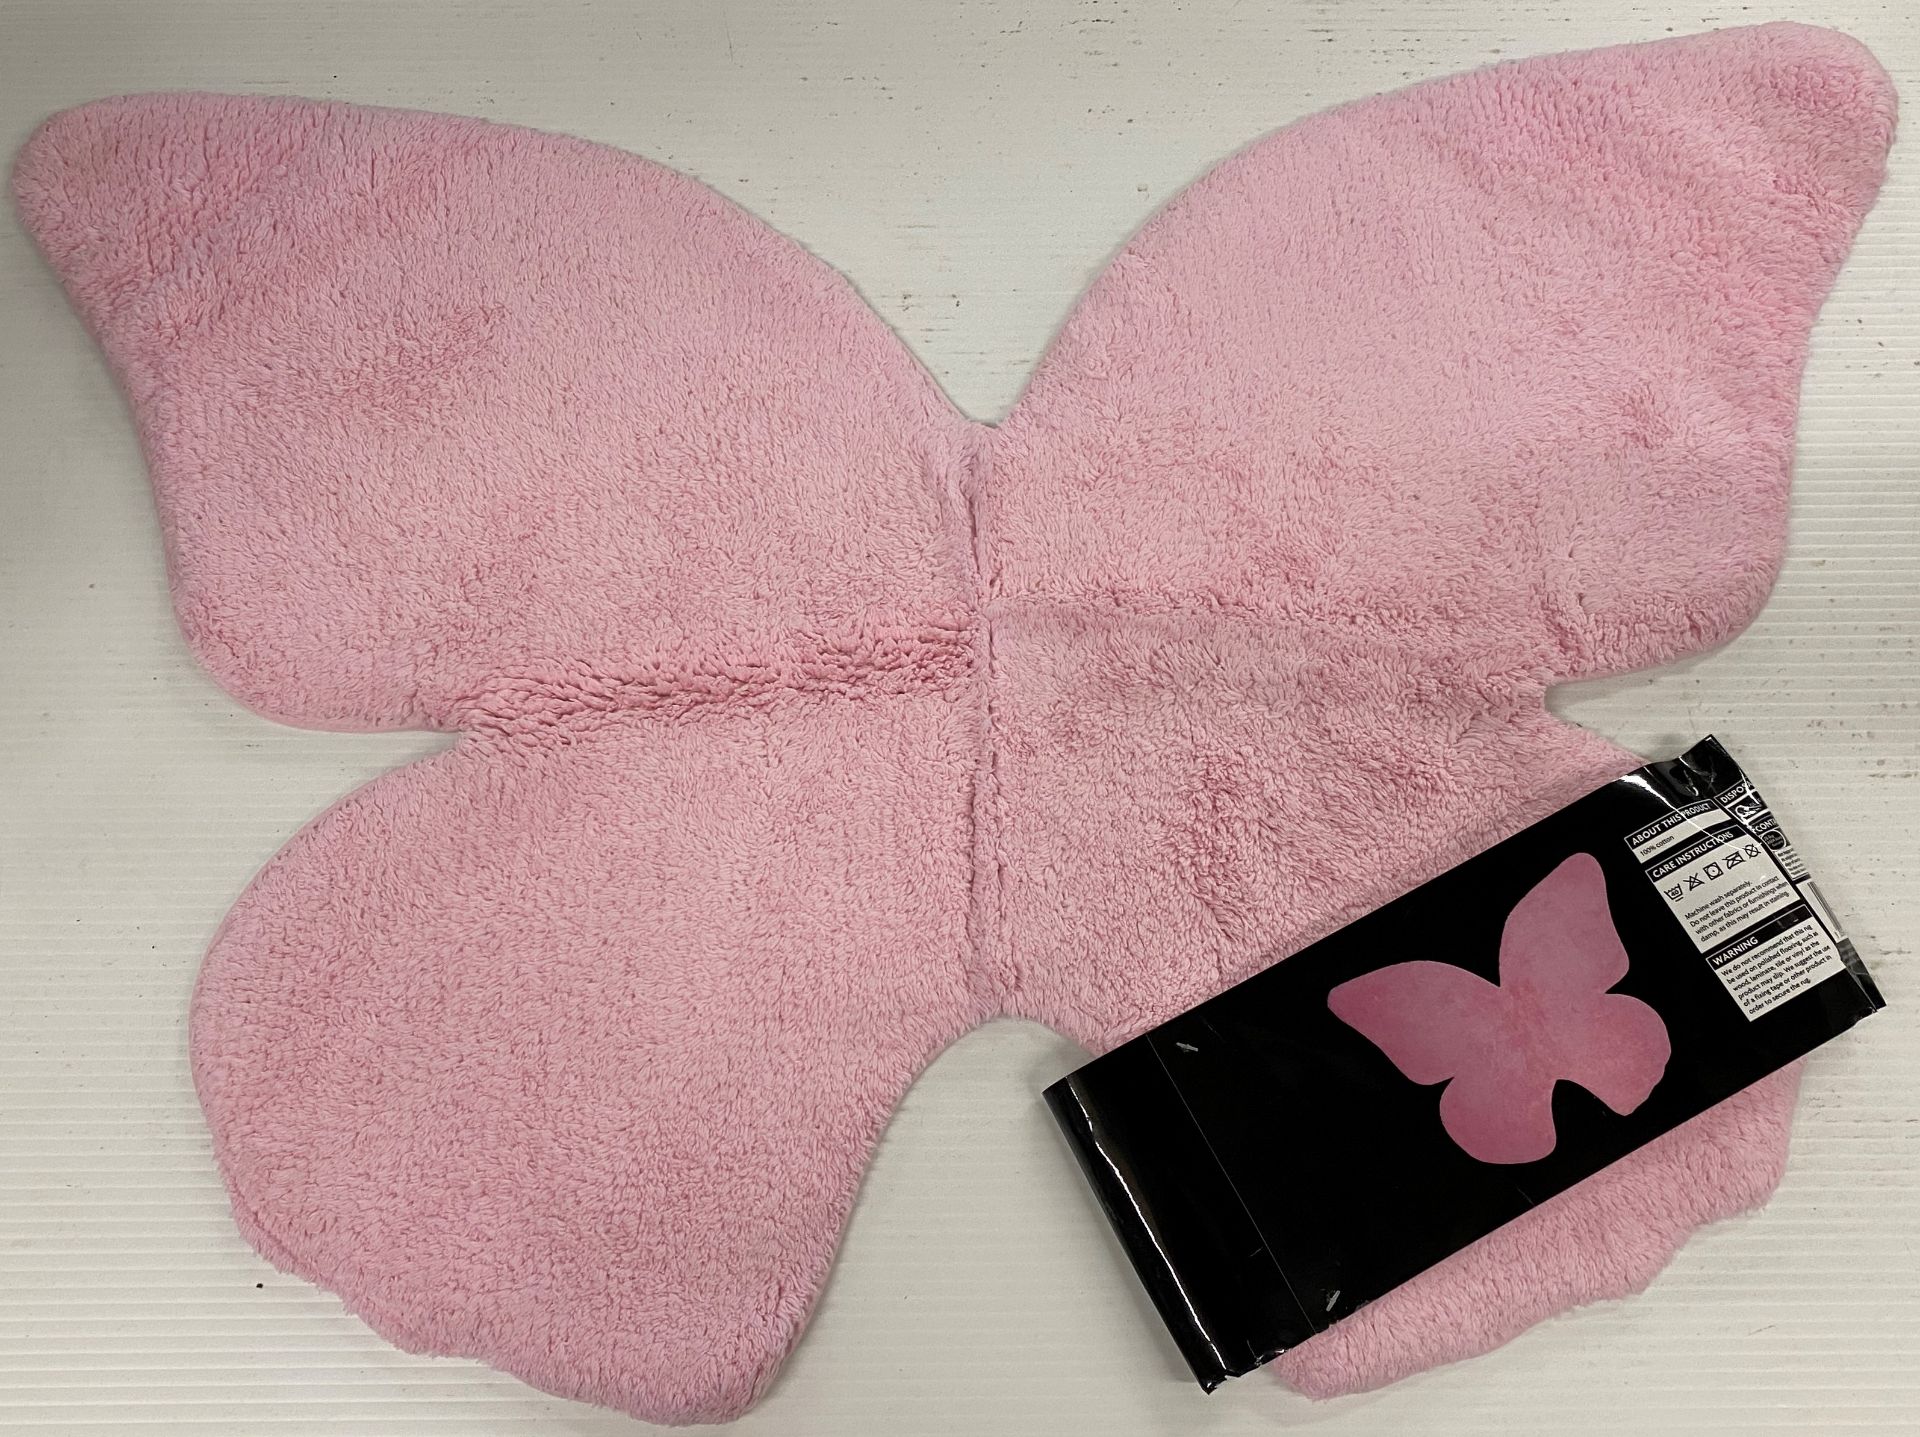 30 x Asda pink butterfly rugs/bath mats - 58cm x 80cm (10 packs of 3)